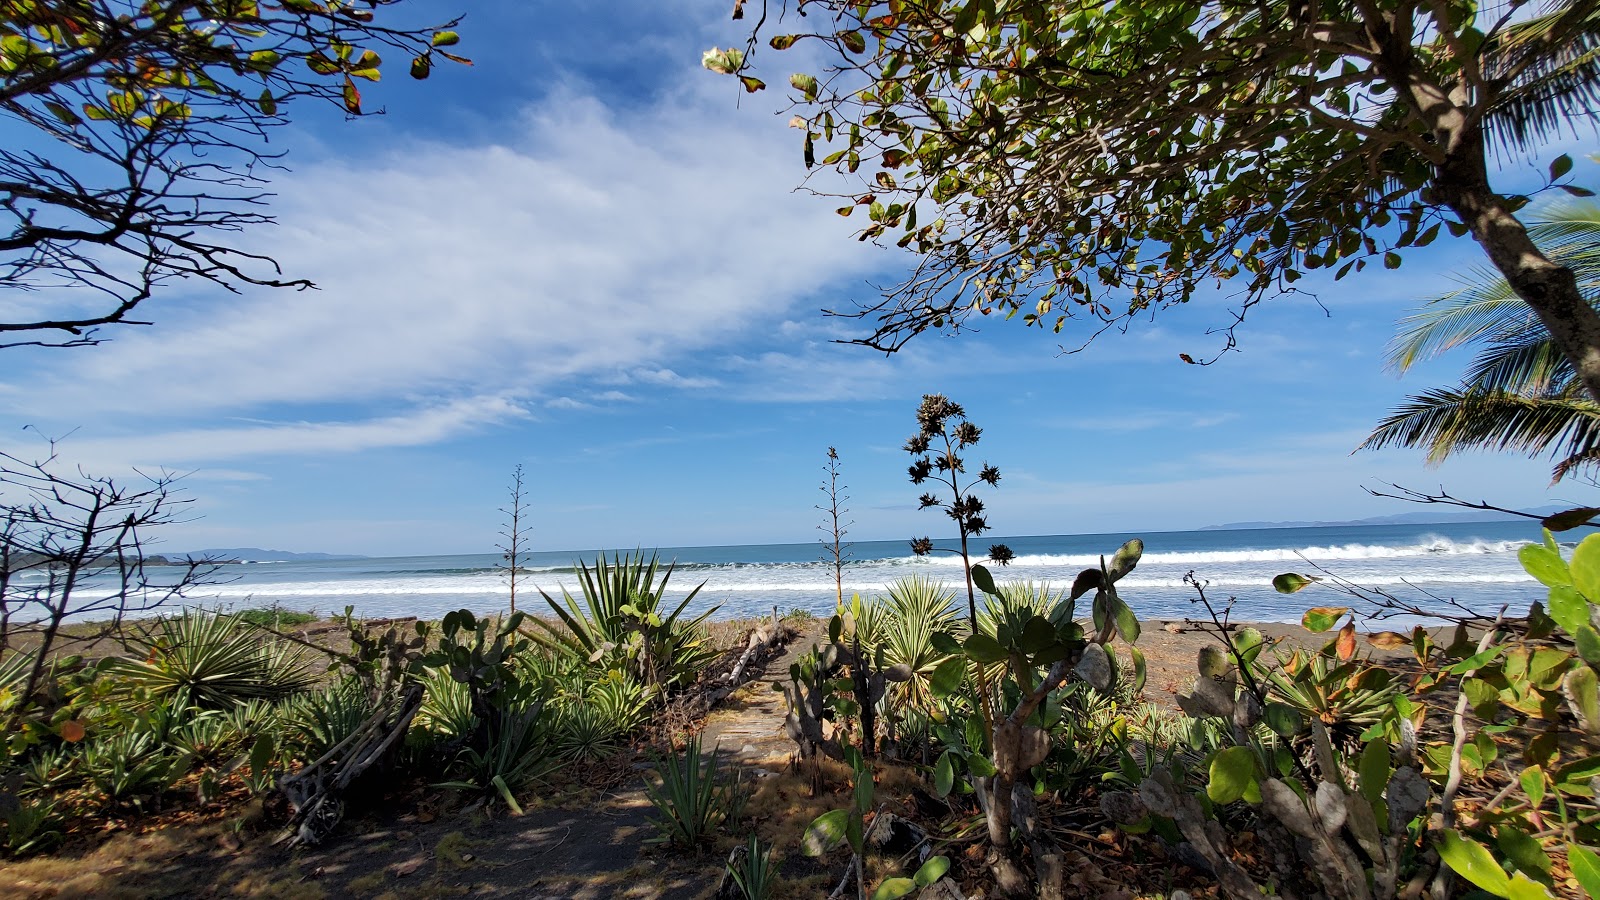 Fotografie cu Playa Tivives - locul popular printre cunoscătorii de relaxare